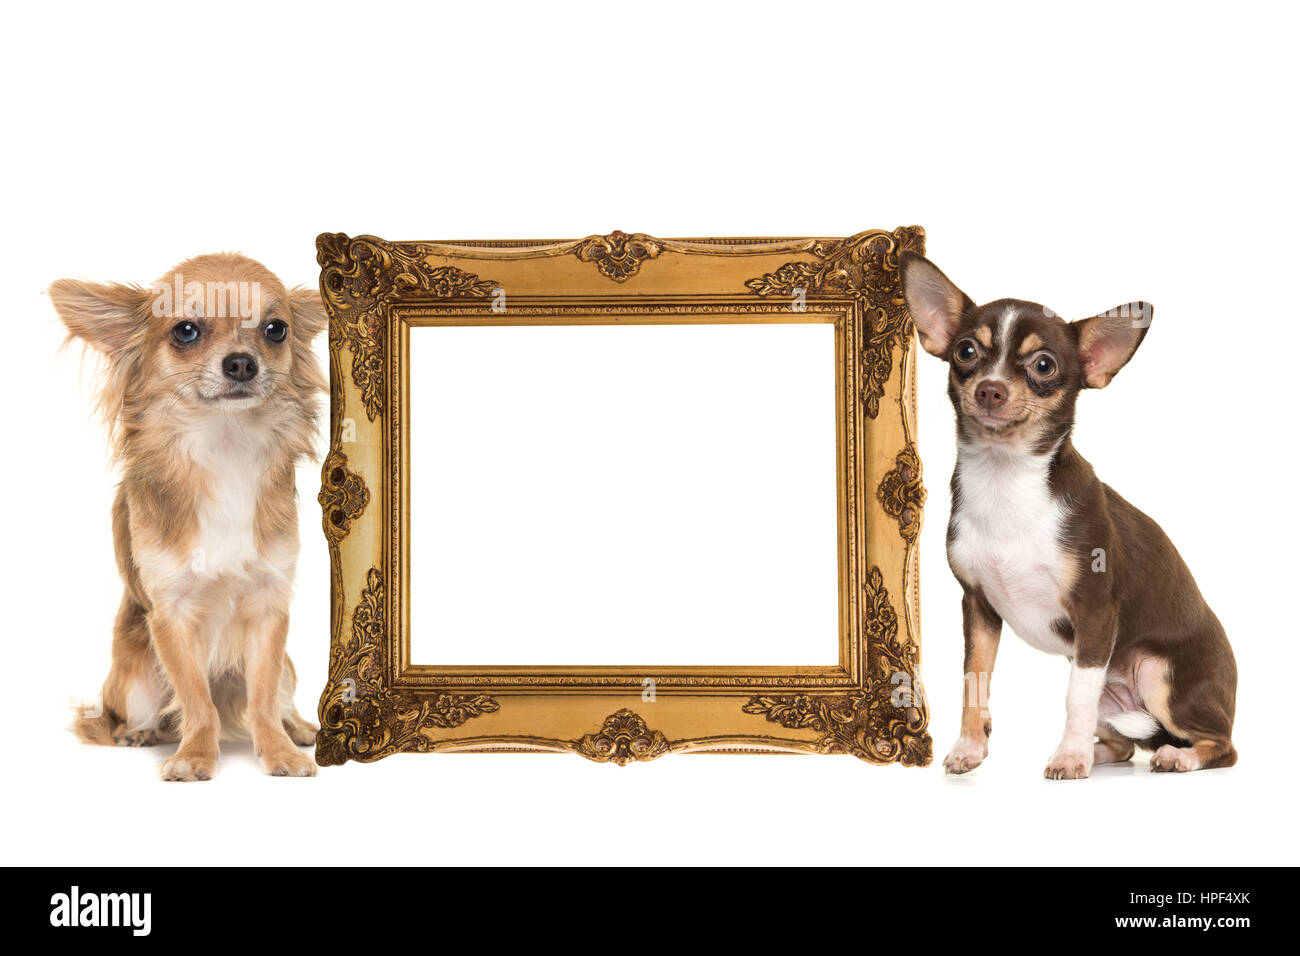 Golden victorian picture frame isolati su uno sfondo bianco con due cani chihuahua un pelo lungo ed uno corto pelo sul lato con una stanza per il testo Foto Stock